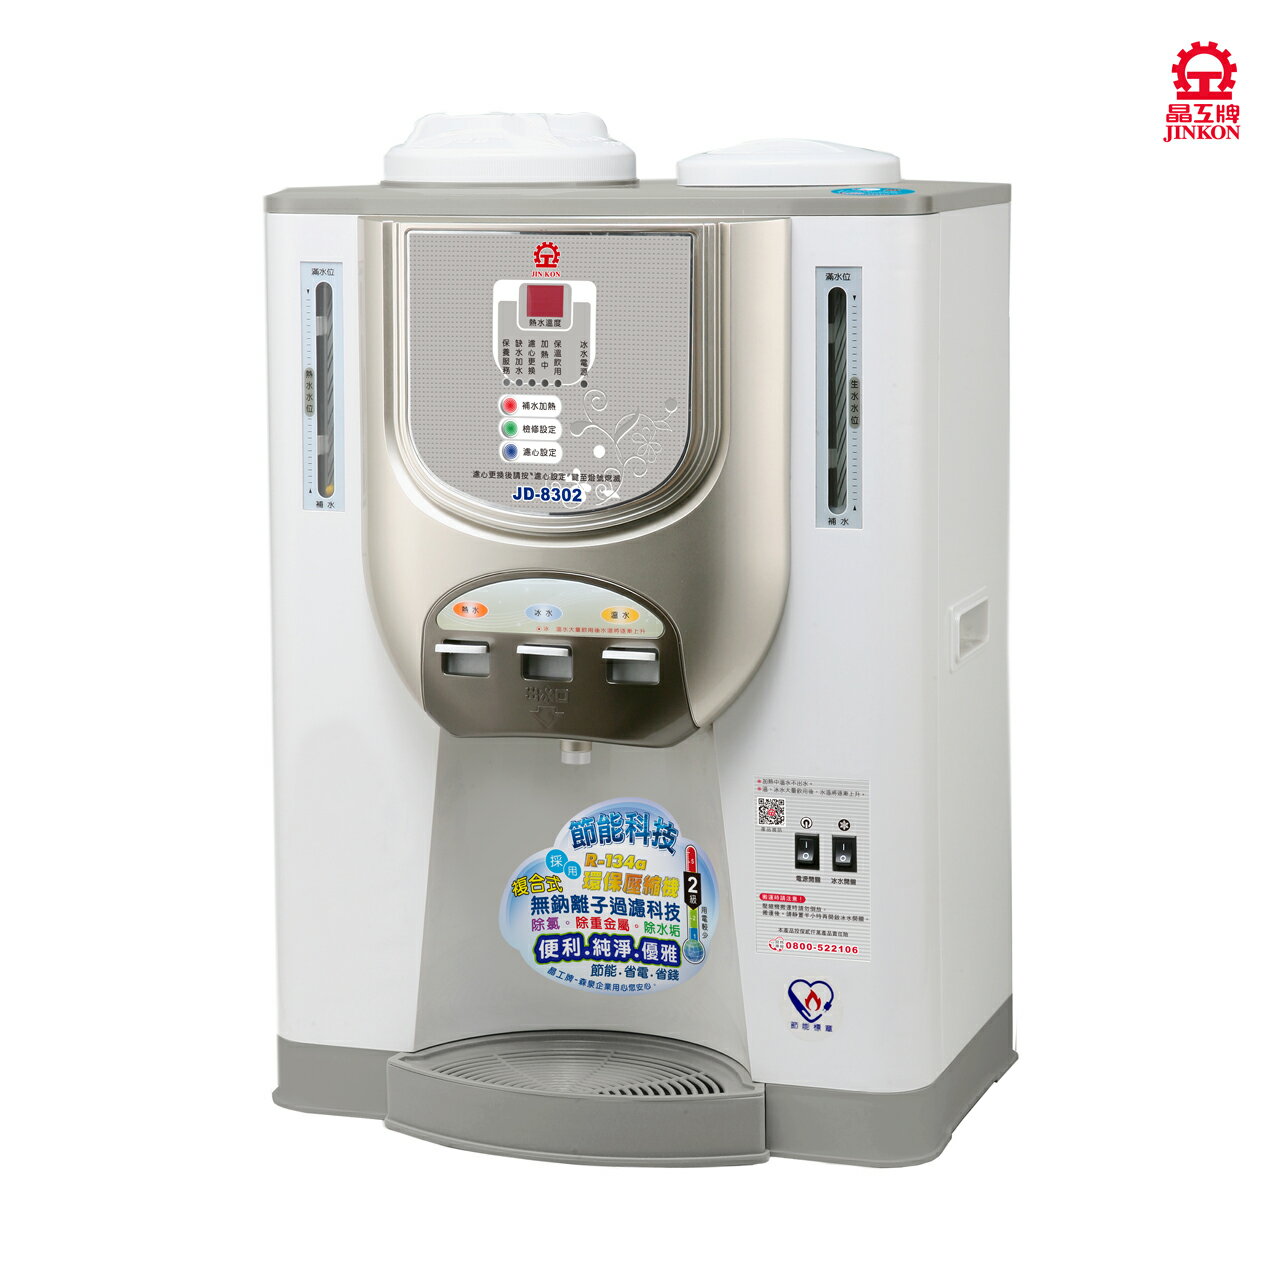 【晶工牌】JD-8302全自動冰溫熱開飲機(飲水機) 11L